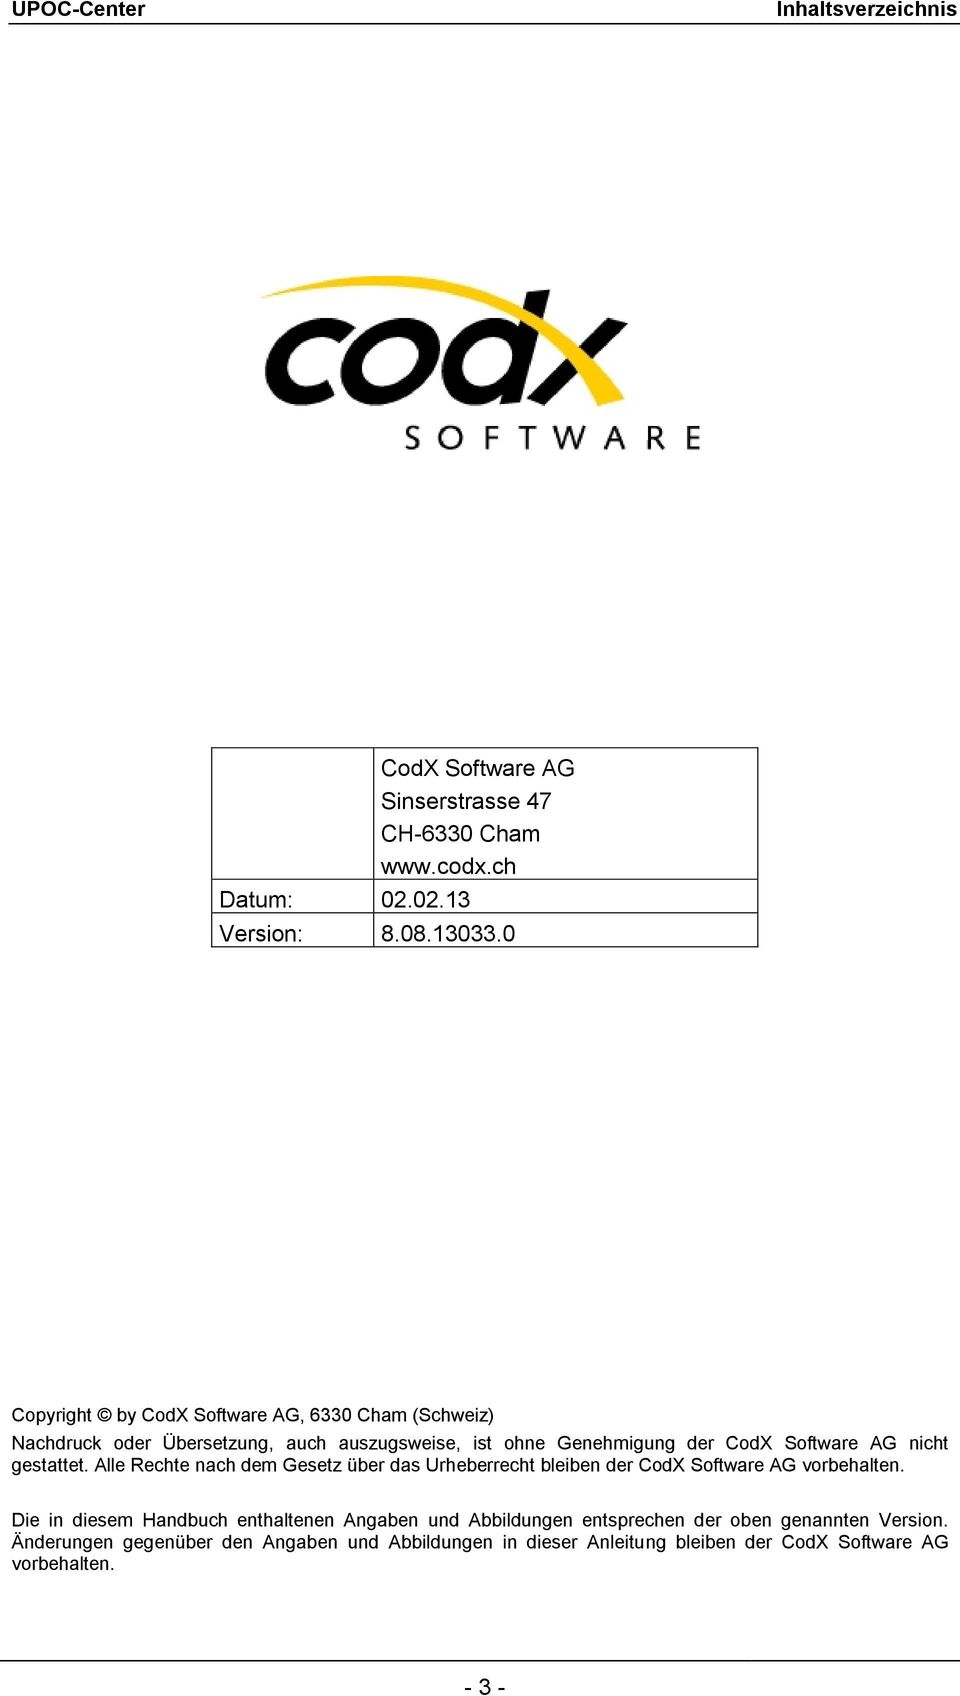 nicht gestattet. Alle Rechte nach dem Gesetz über das Urheberrecht bleiben der CodX Software AG vorbehalten.